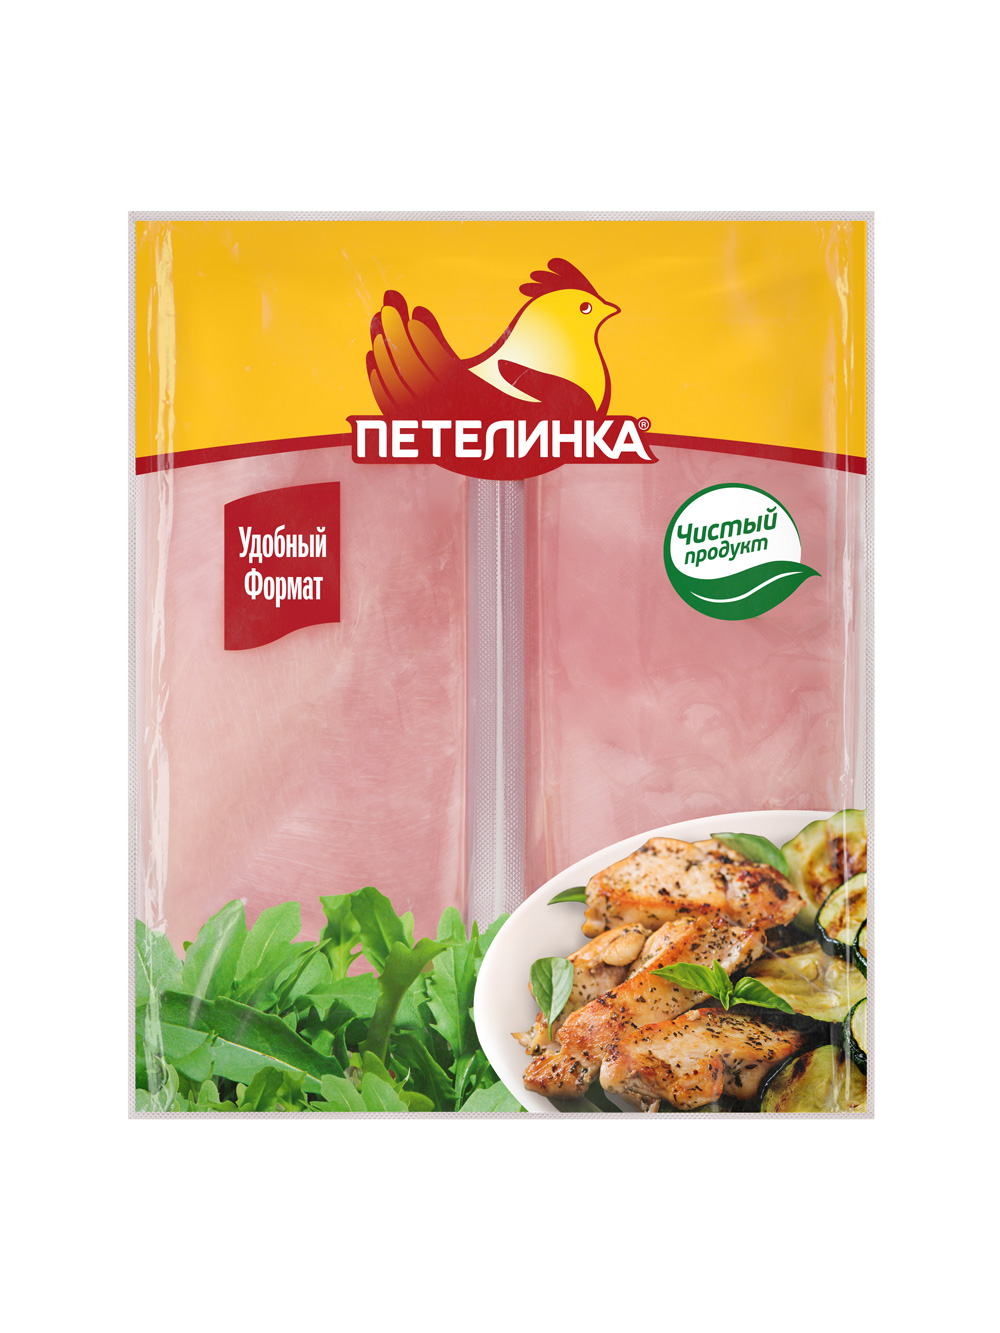 petelinka1 - «Петелинка» представила продукцию в новой удобной вакуумной упаковке | Новости компании